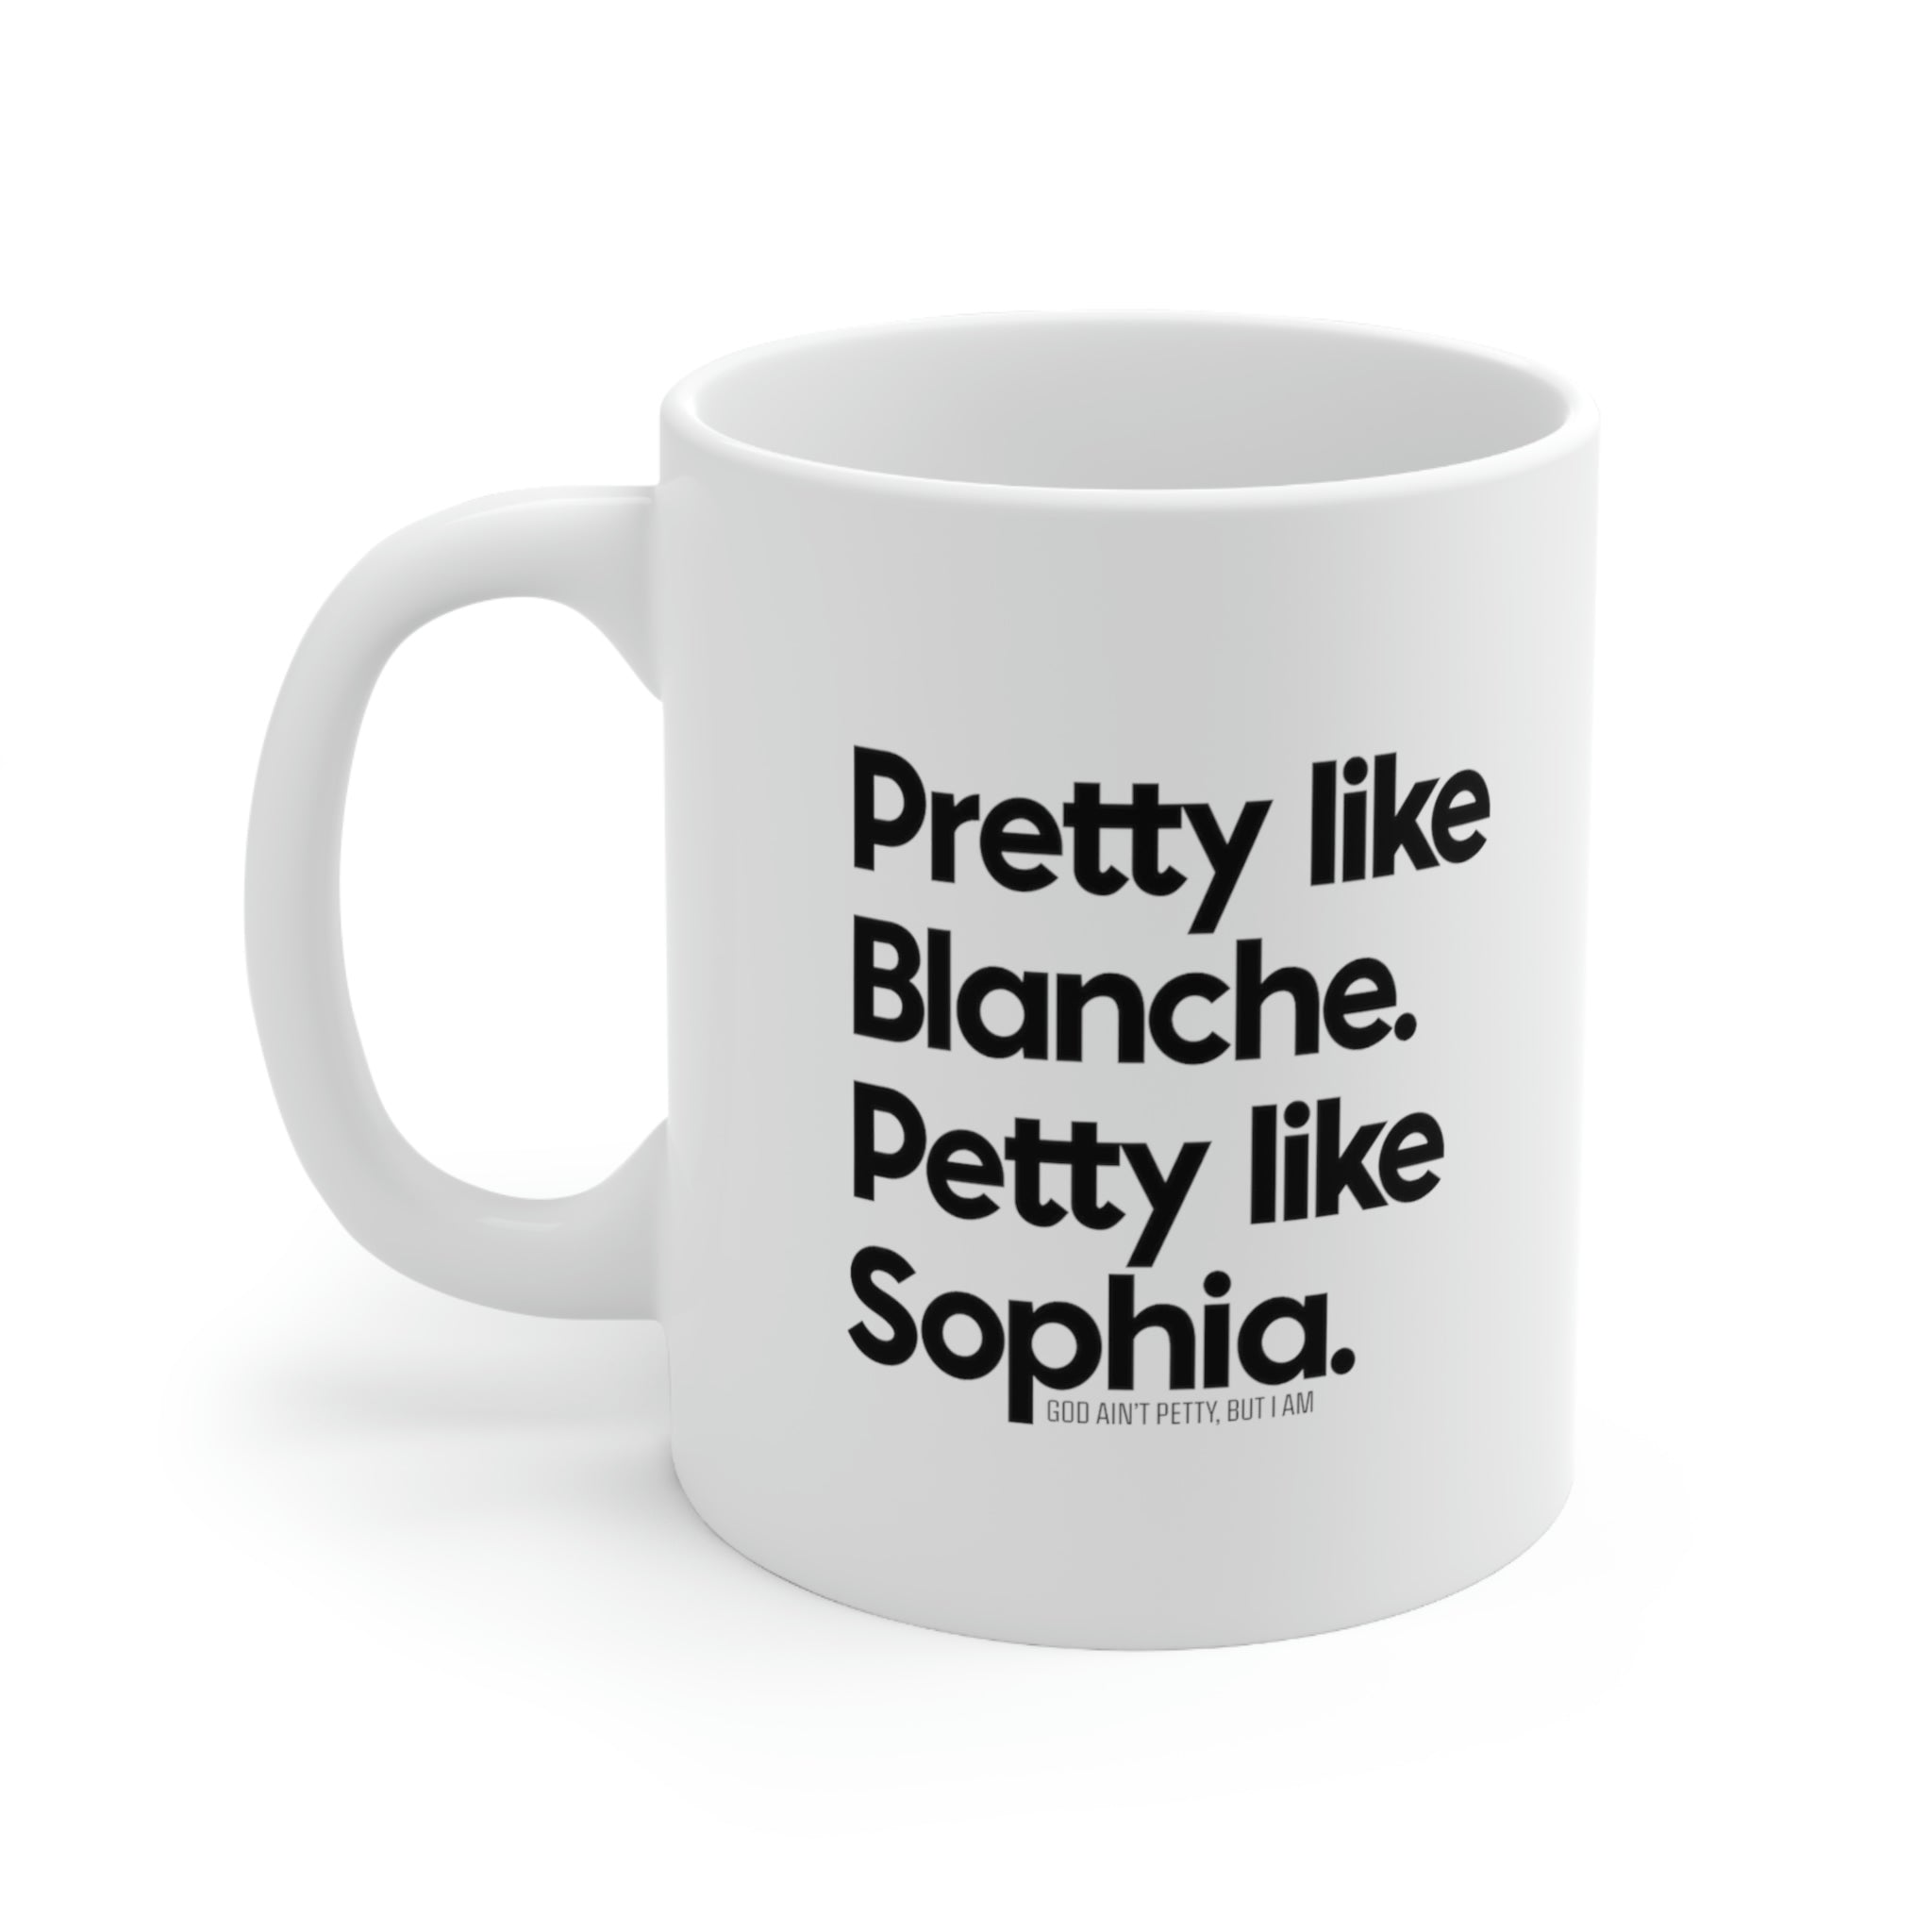 Pretty like Blanche Petty like Sophia Mug 11oz (White/Black)-Mug-The Original God Ain't Petty But I Am